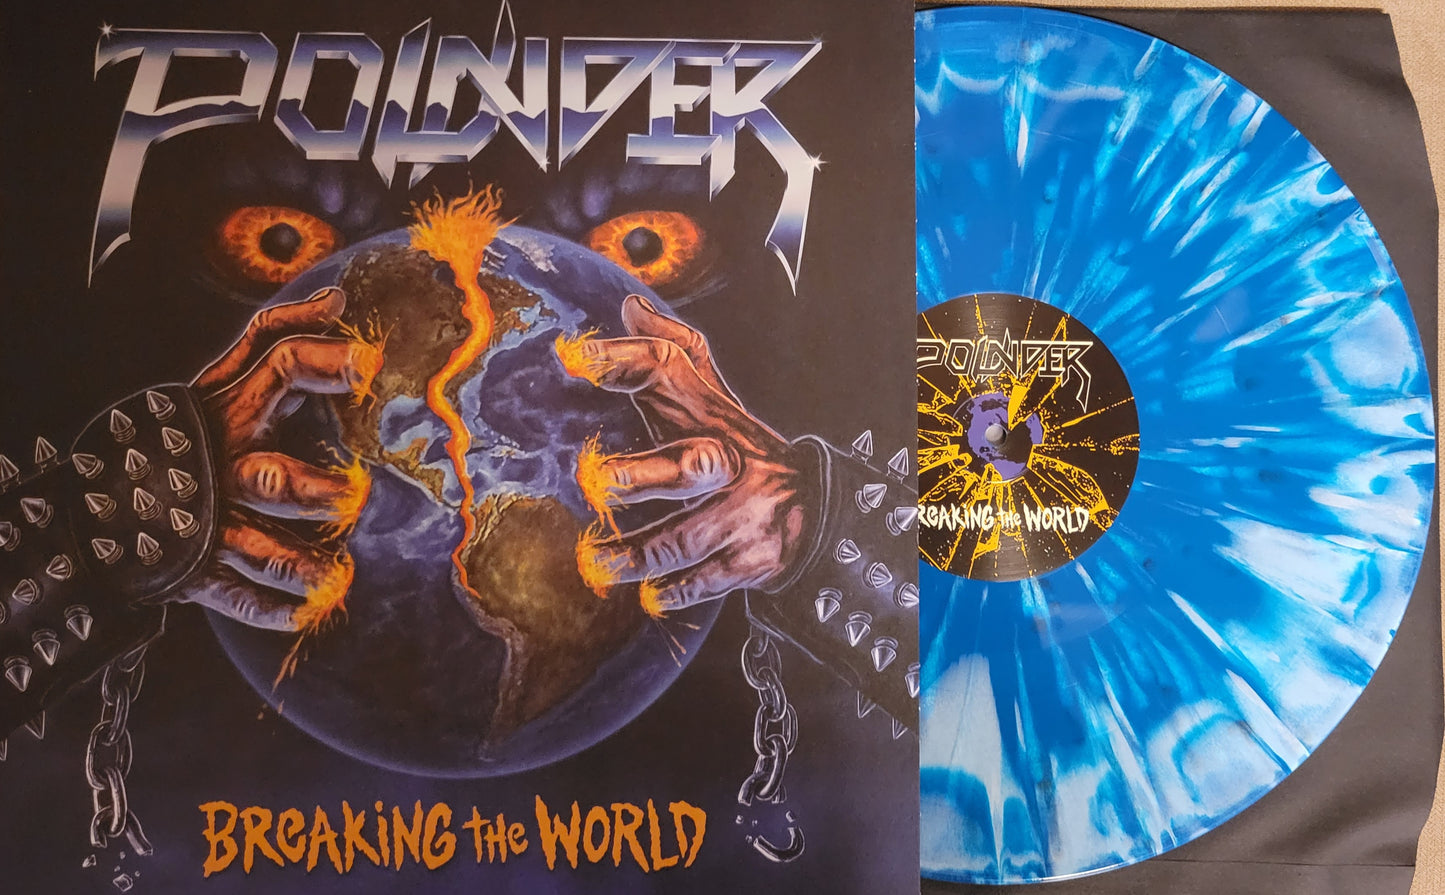 POUNDER "Breaking the World" Vinyl Repress "Deadly Eyes" blue splatter variant